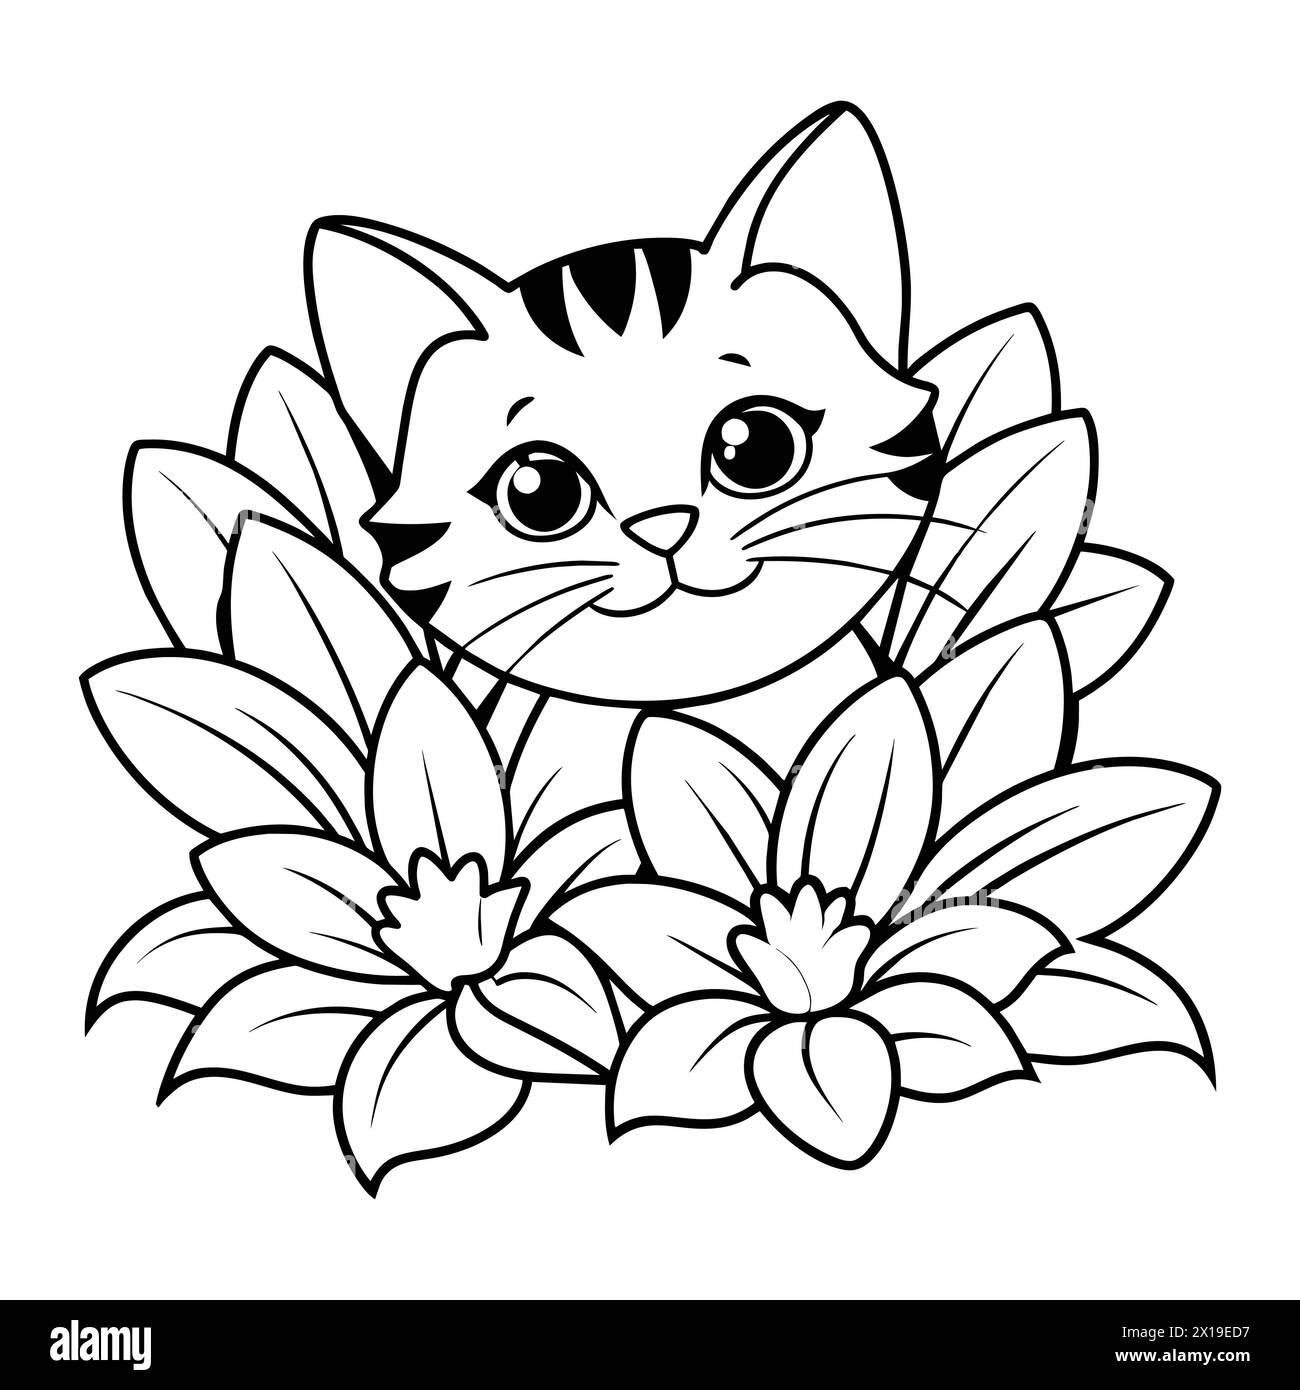 "Adorabile Feline Frolic: Giocoso gattino che si nasconde tra Blossoms Sparks Joy" Illustrazione Vettoriale